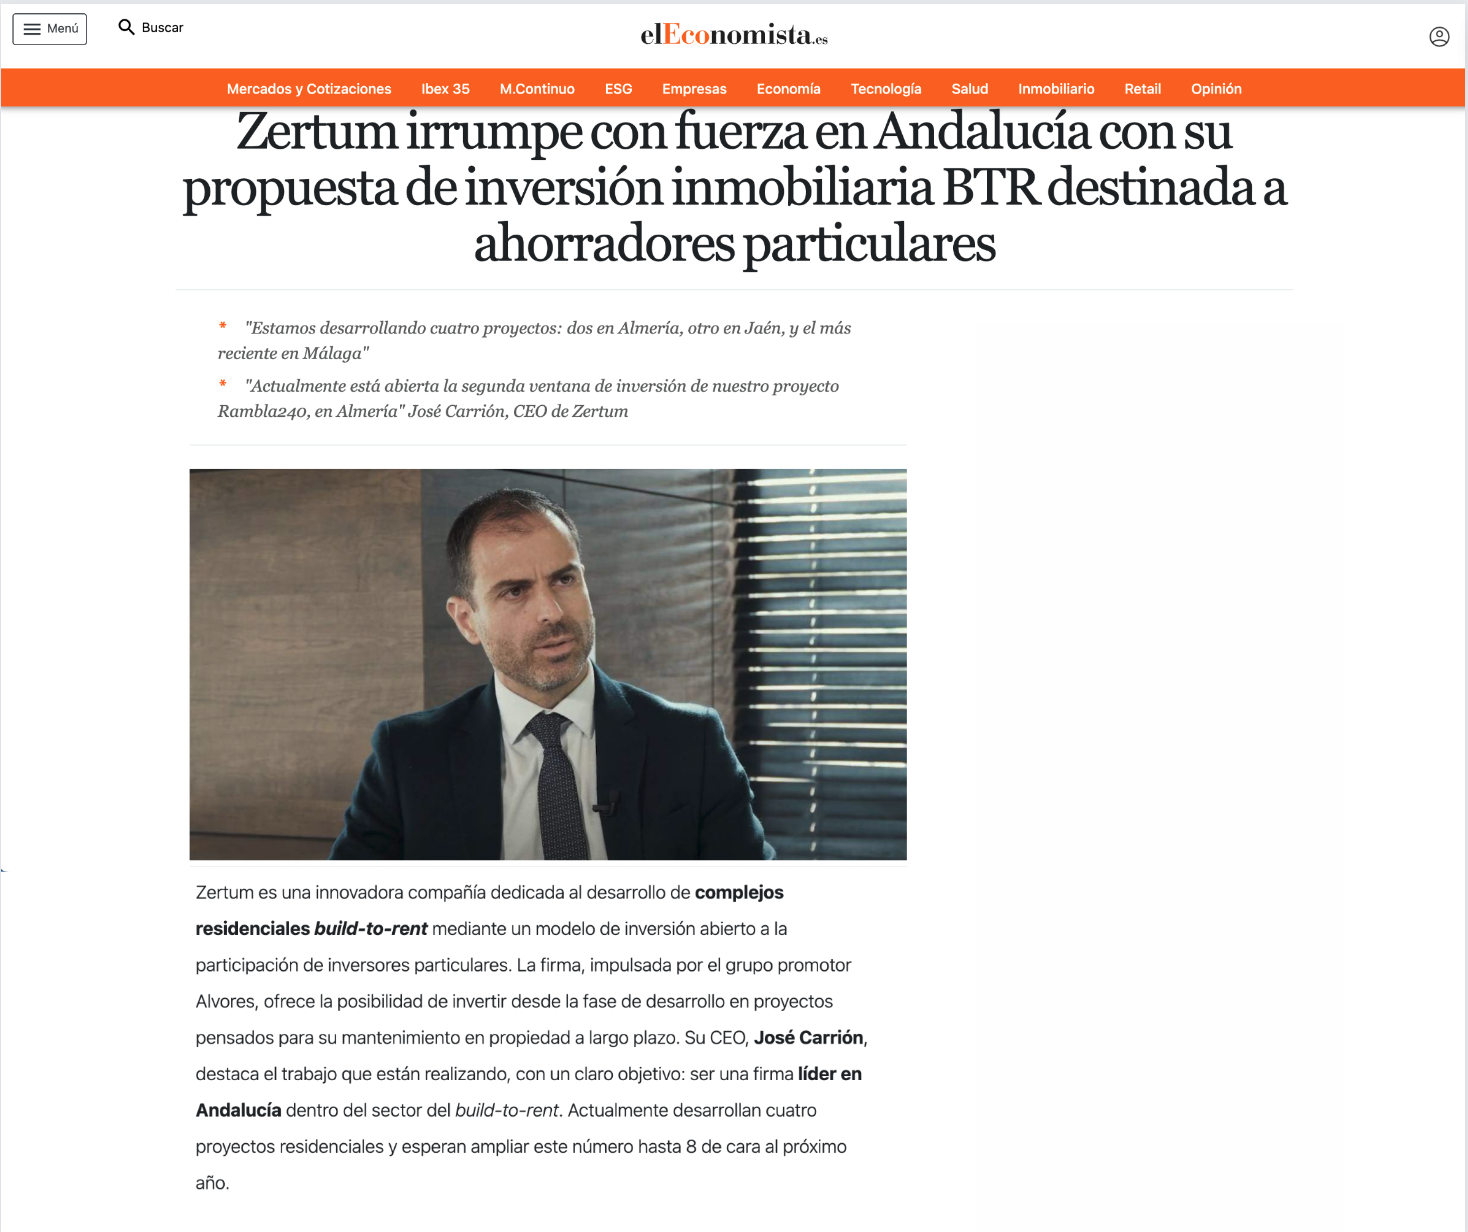 Zertum irrumpe con fuerza en Andalucía con su propuesta de inversión inmobiliaria BTR destinada a ahorradores particulares